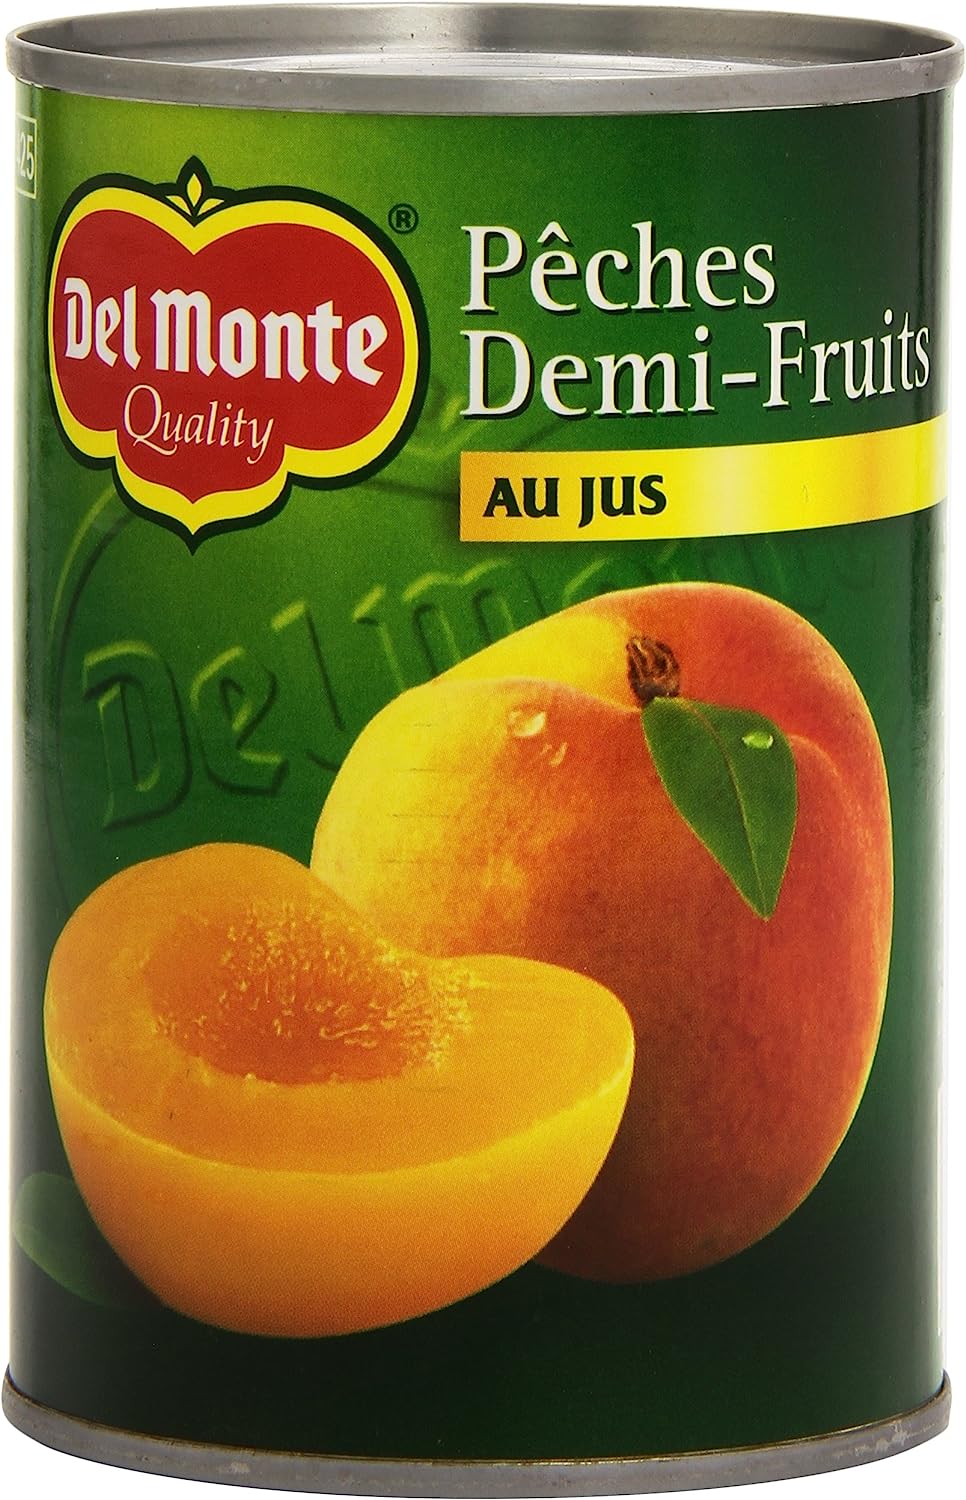 Pêches Demi-Fruits au Jus Del Monte en boîte de 415 g